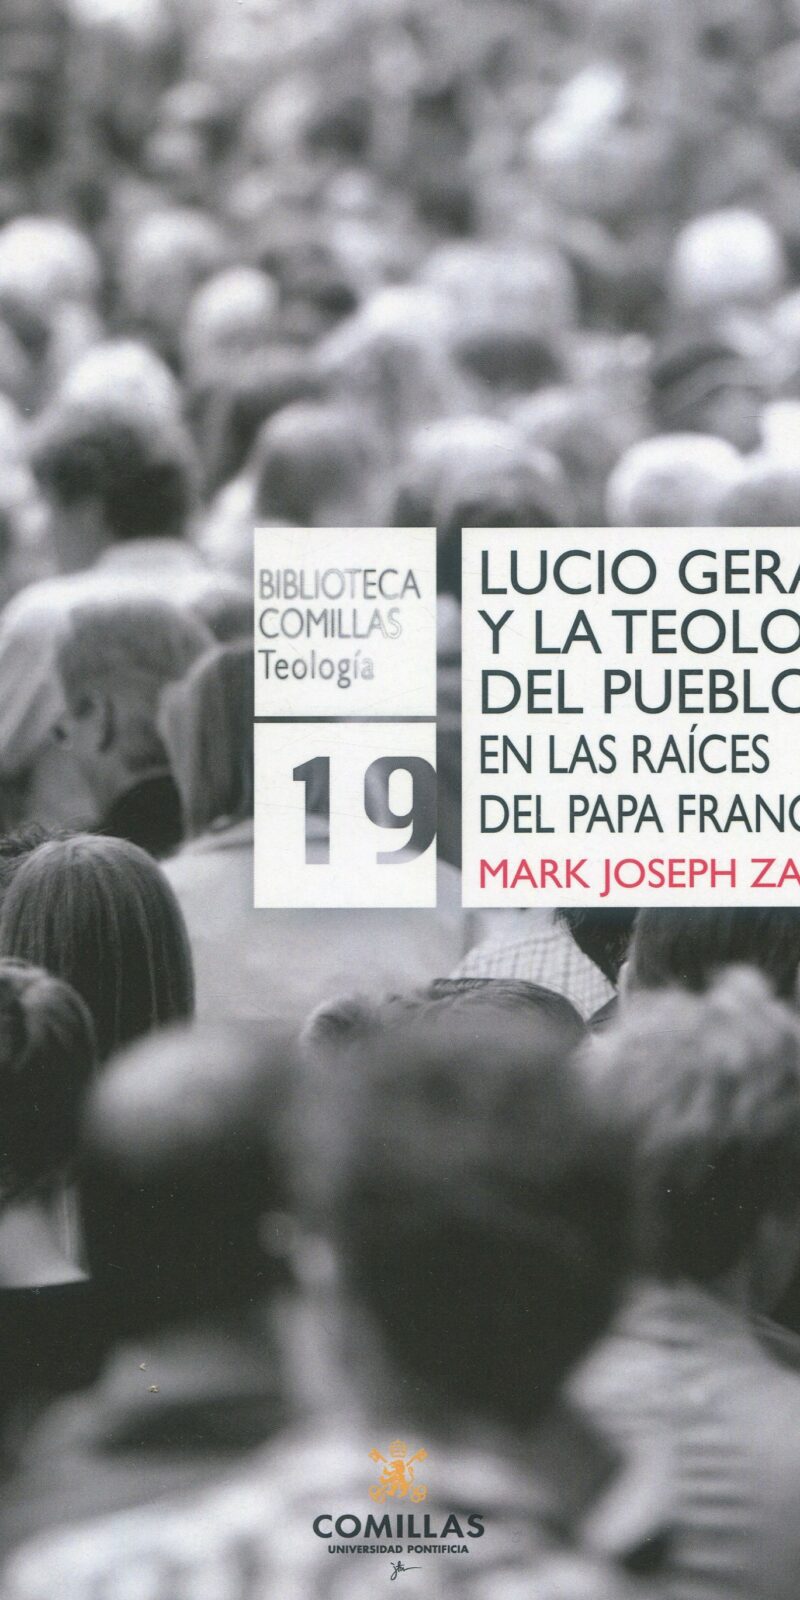 Lucio Gera y la teología del pueblo 9788484689812